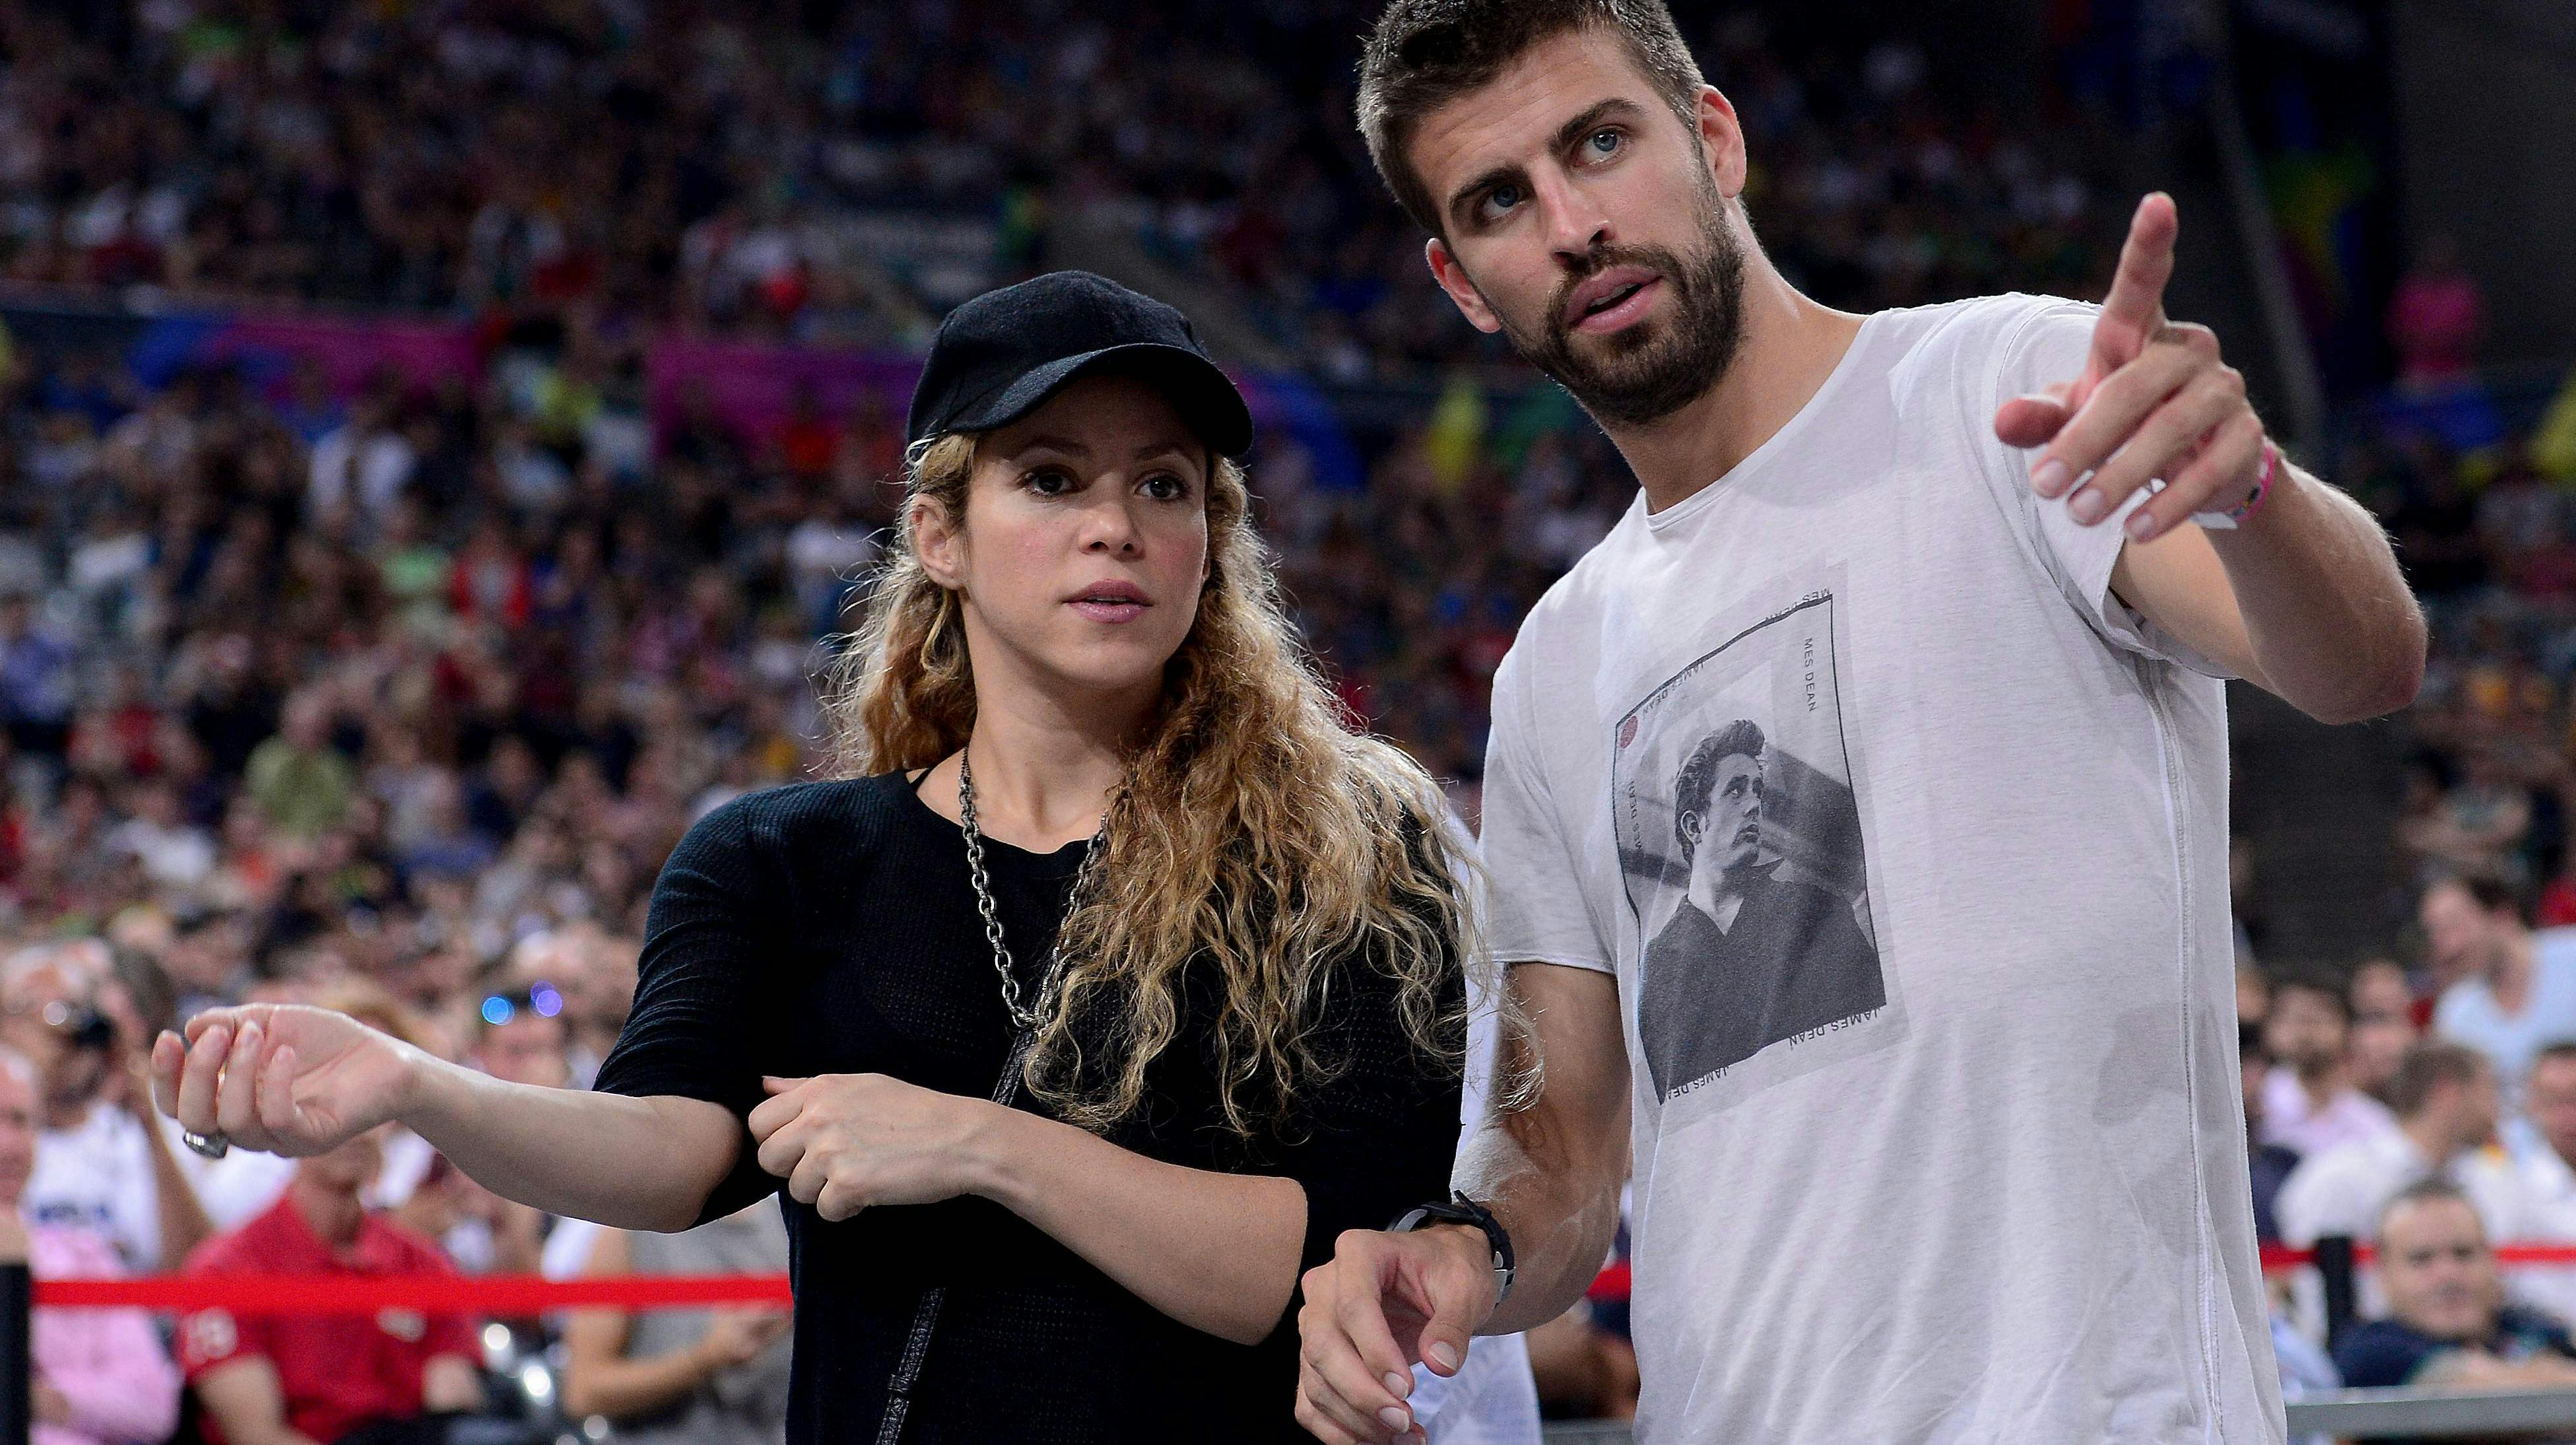 Dramaet fortsætter mellem Shakira og eks'en Gerard Pique.